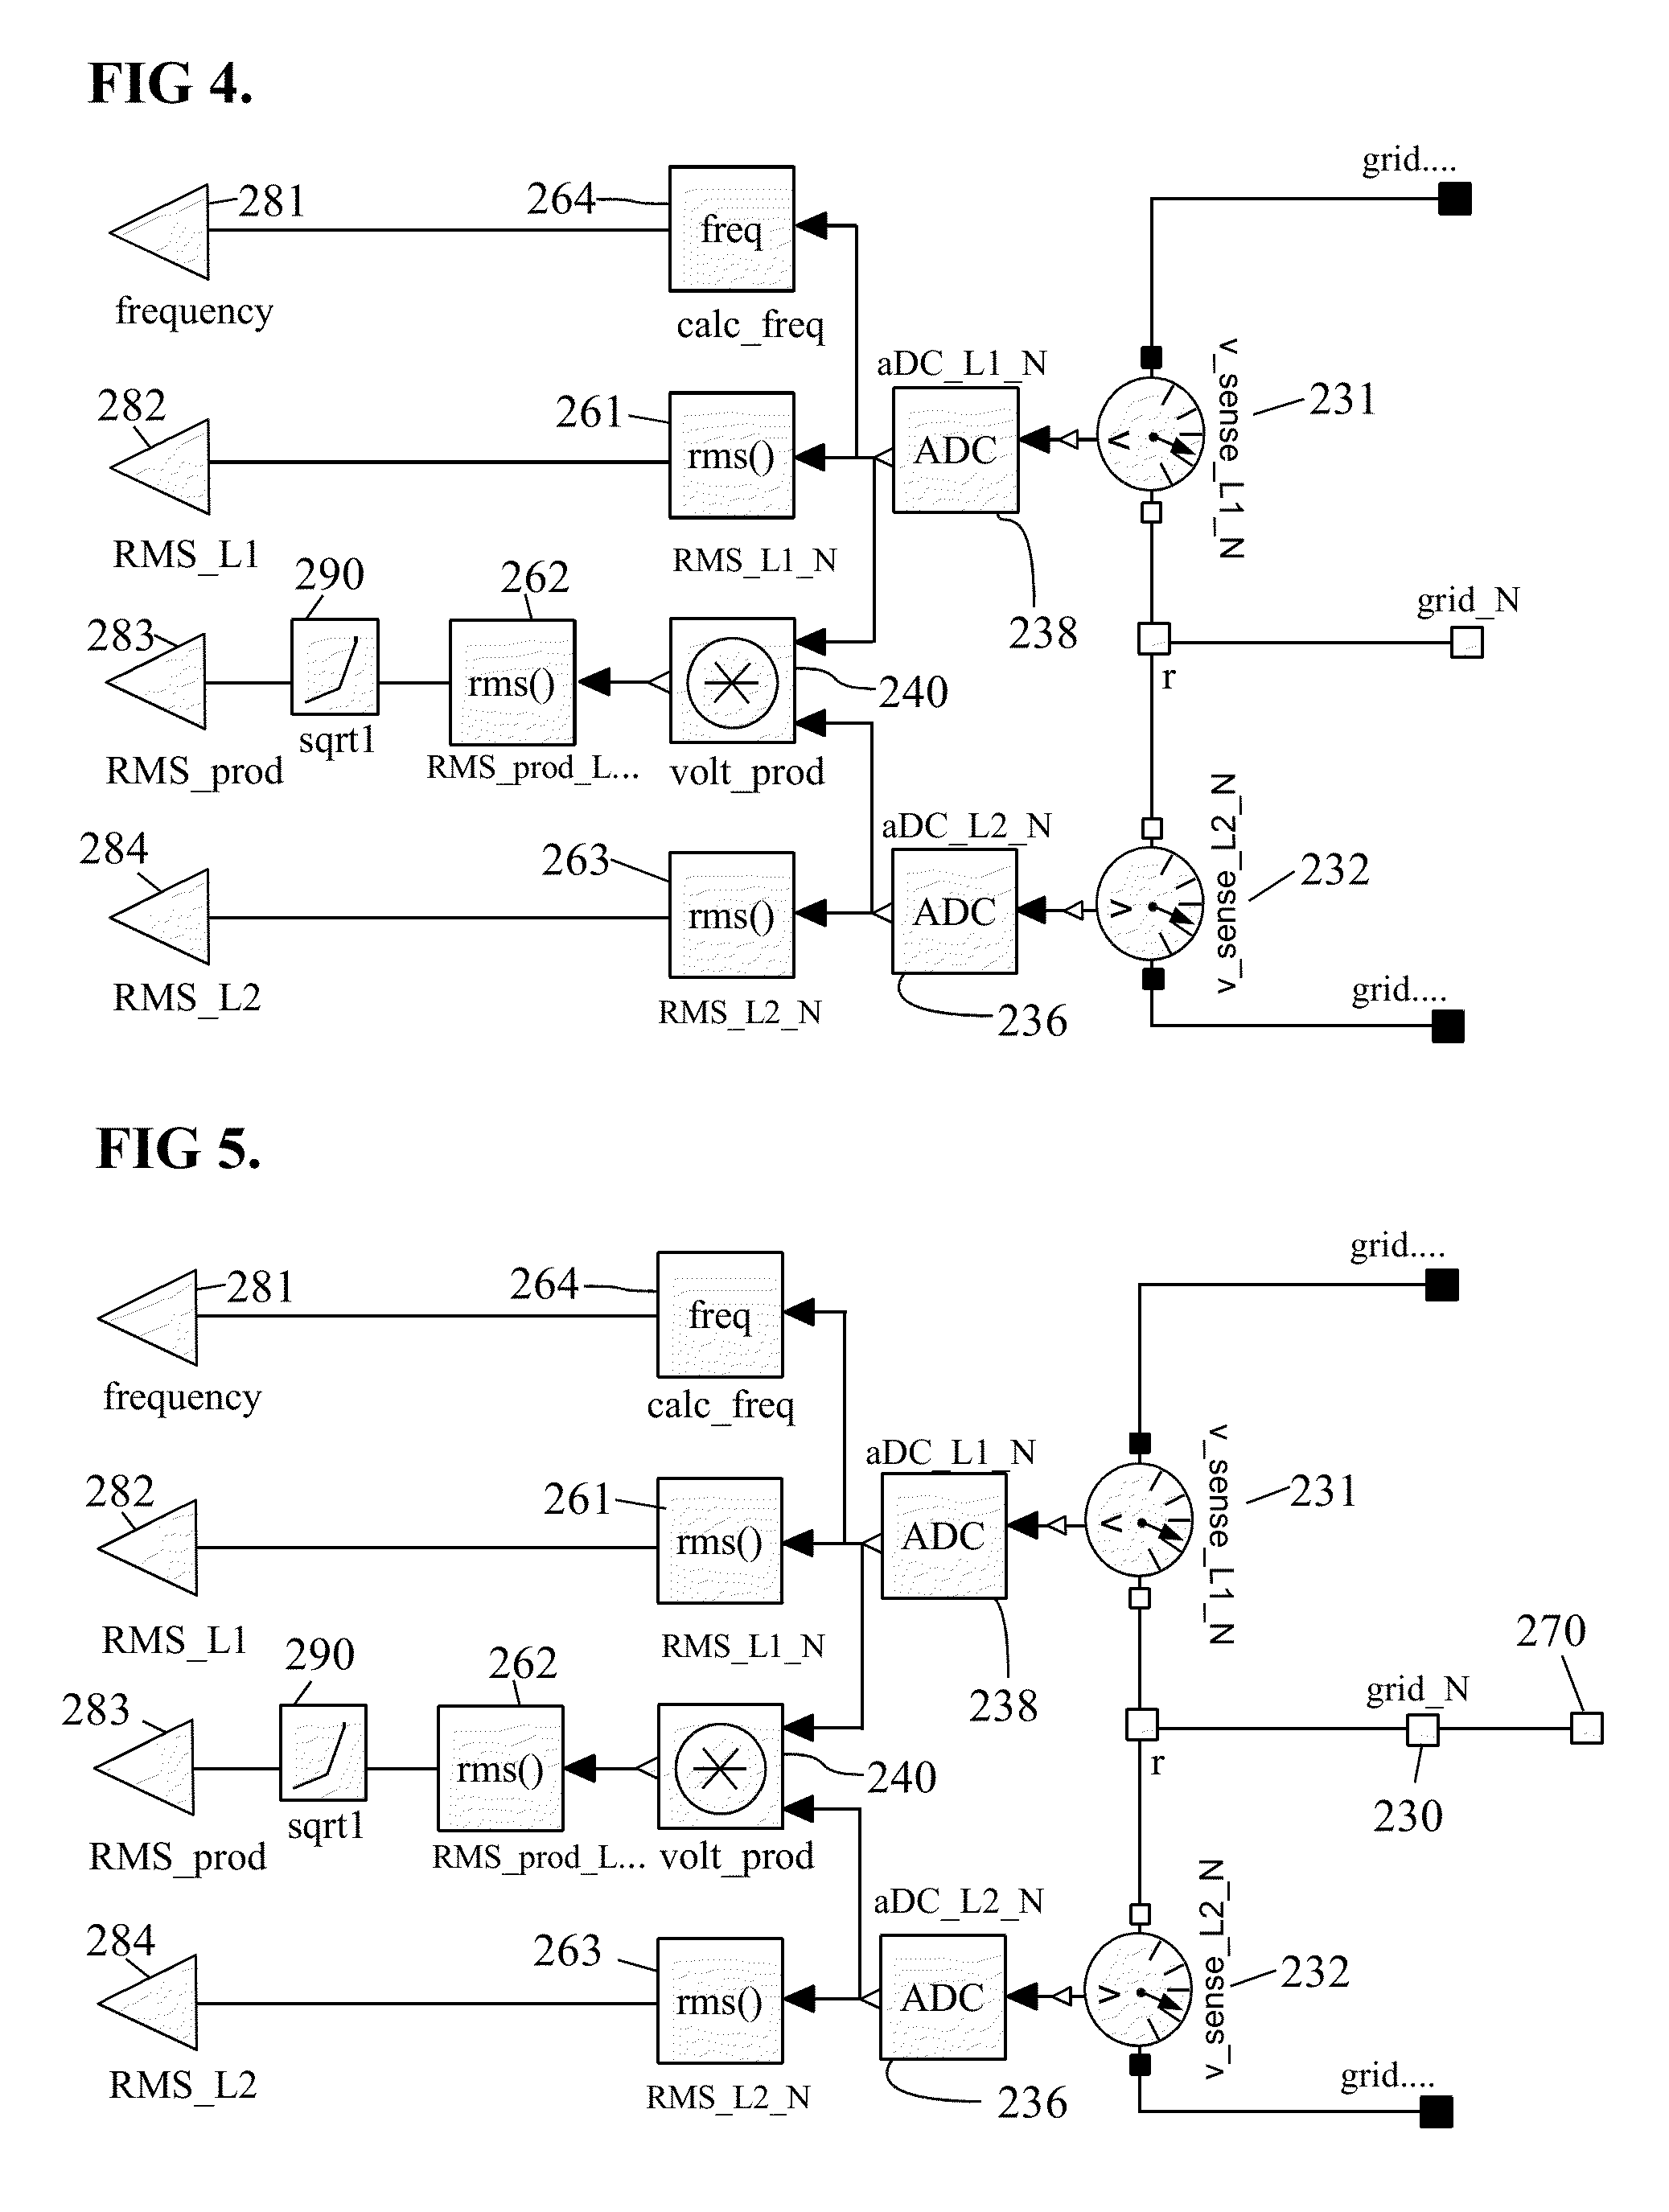 Supply voltage auto-sensing